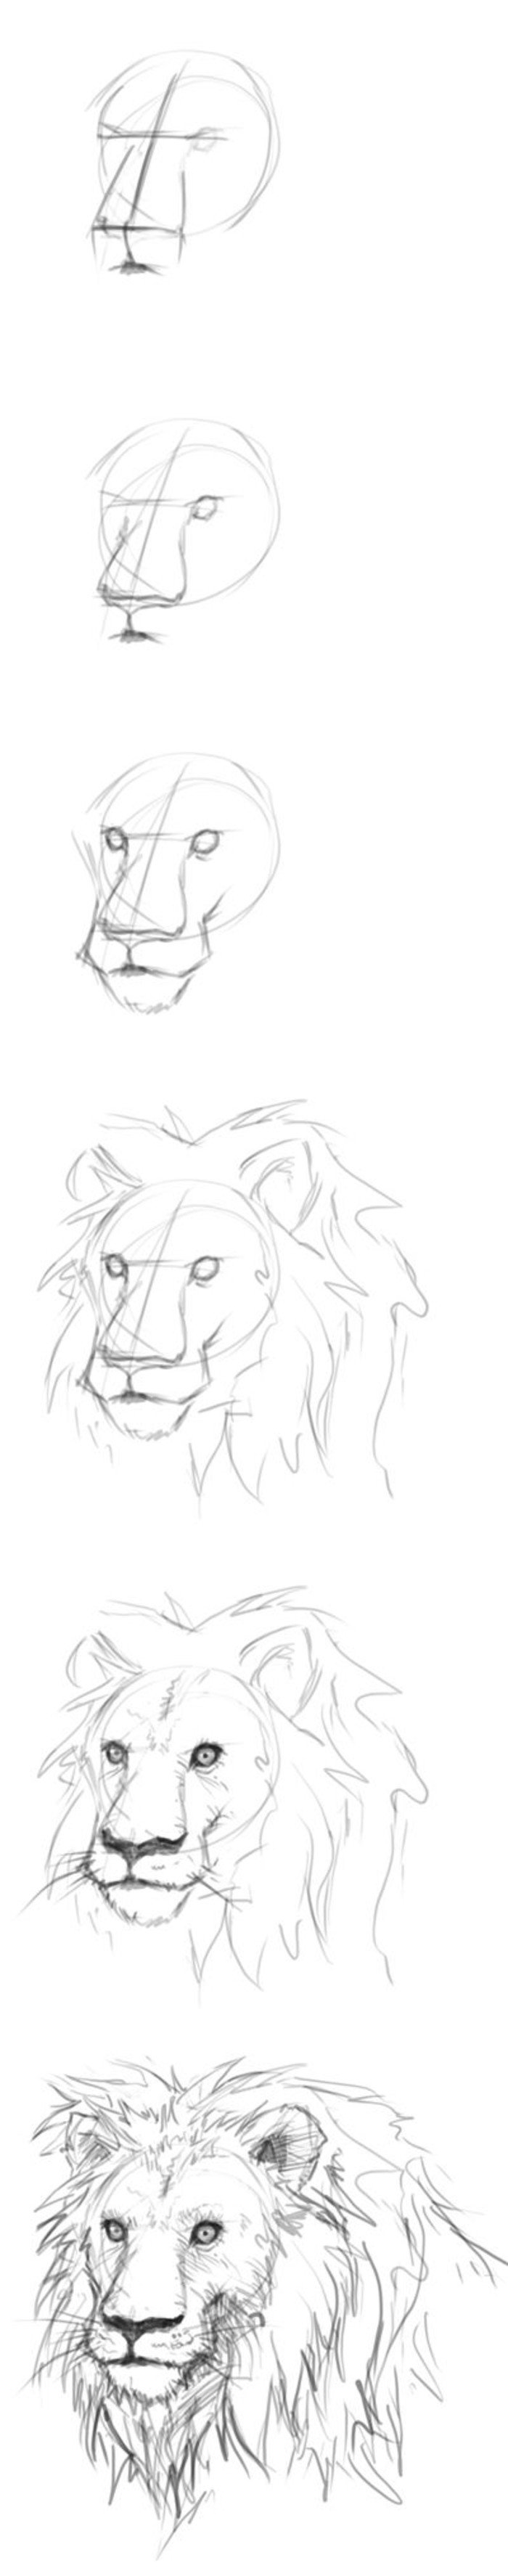 Поэтапное рисование Льва